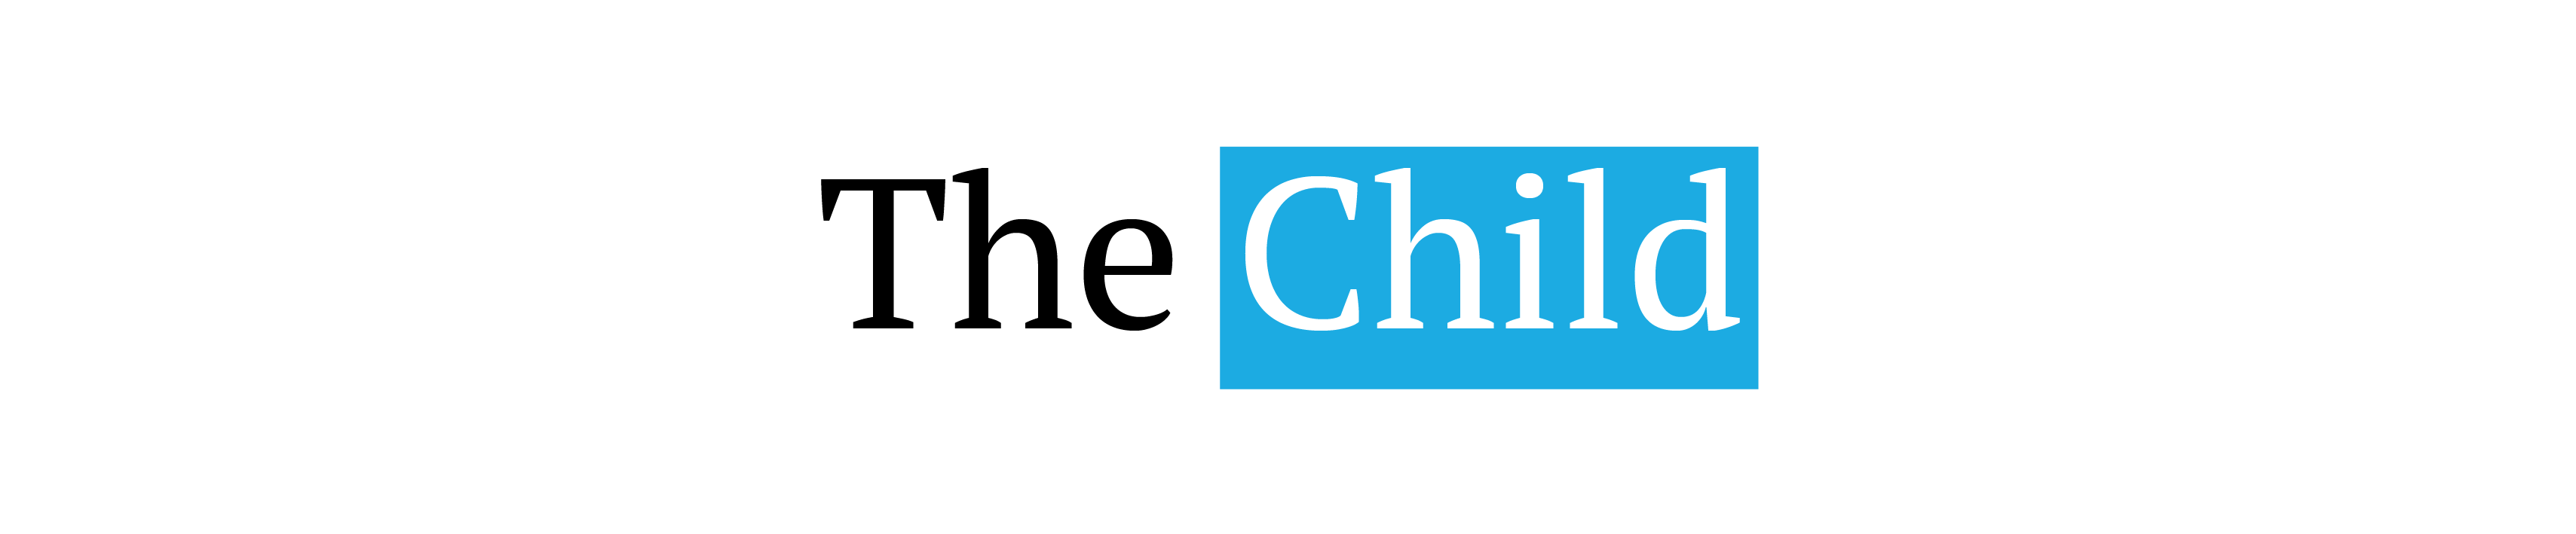 Child logo 